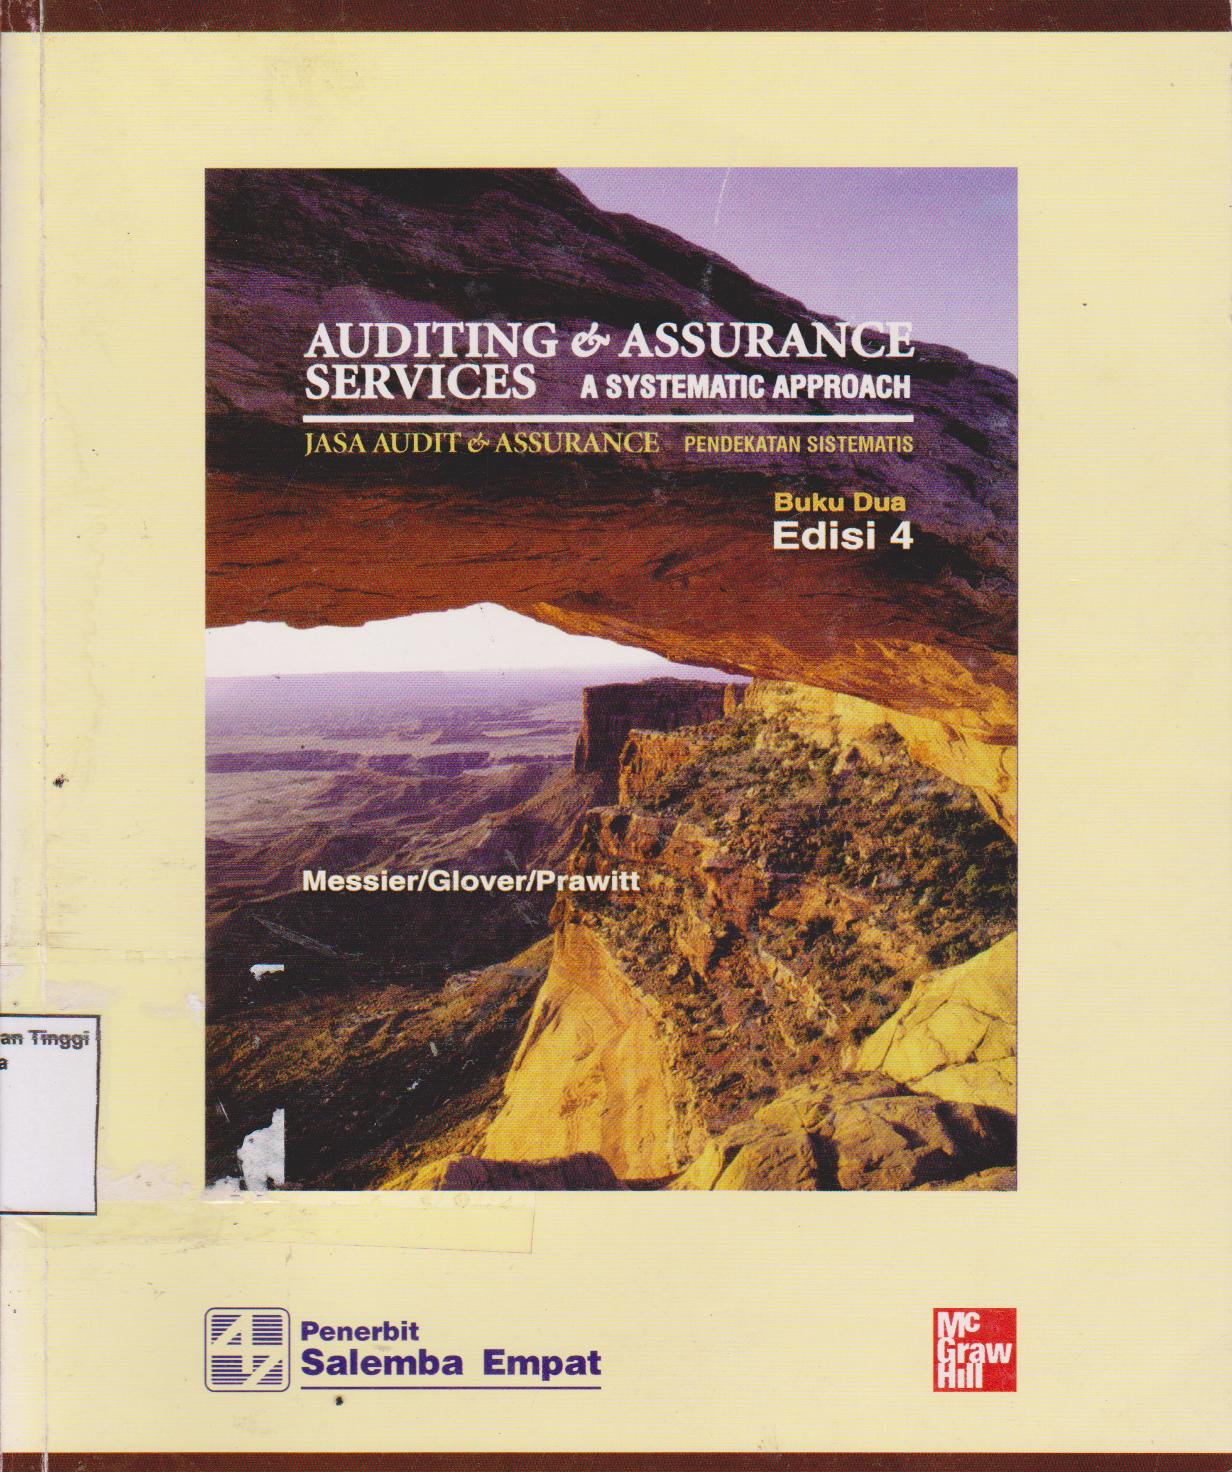 Jasa audit&assurance: pendekatan sistematis buku 2 edisi 4